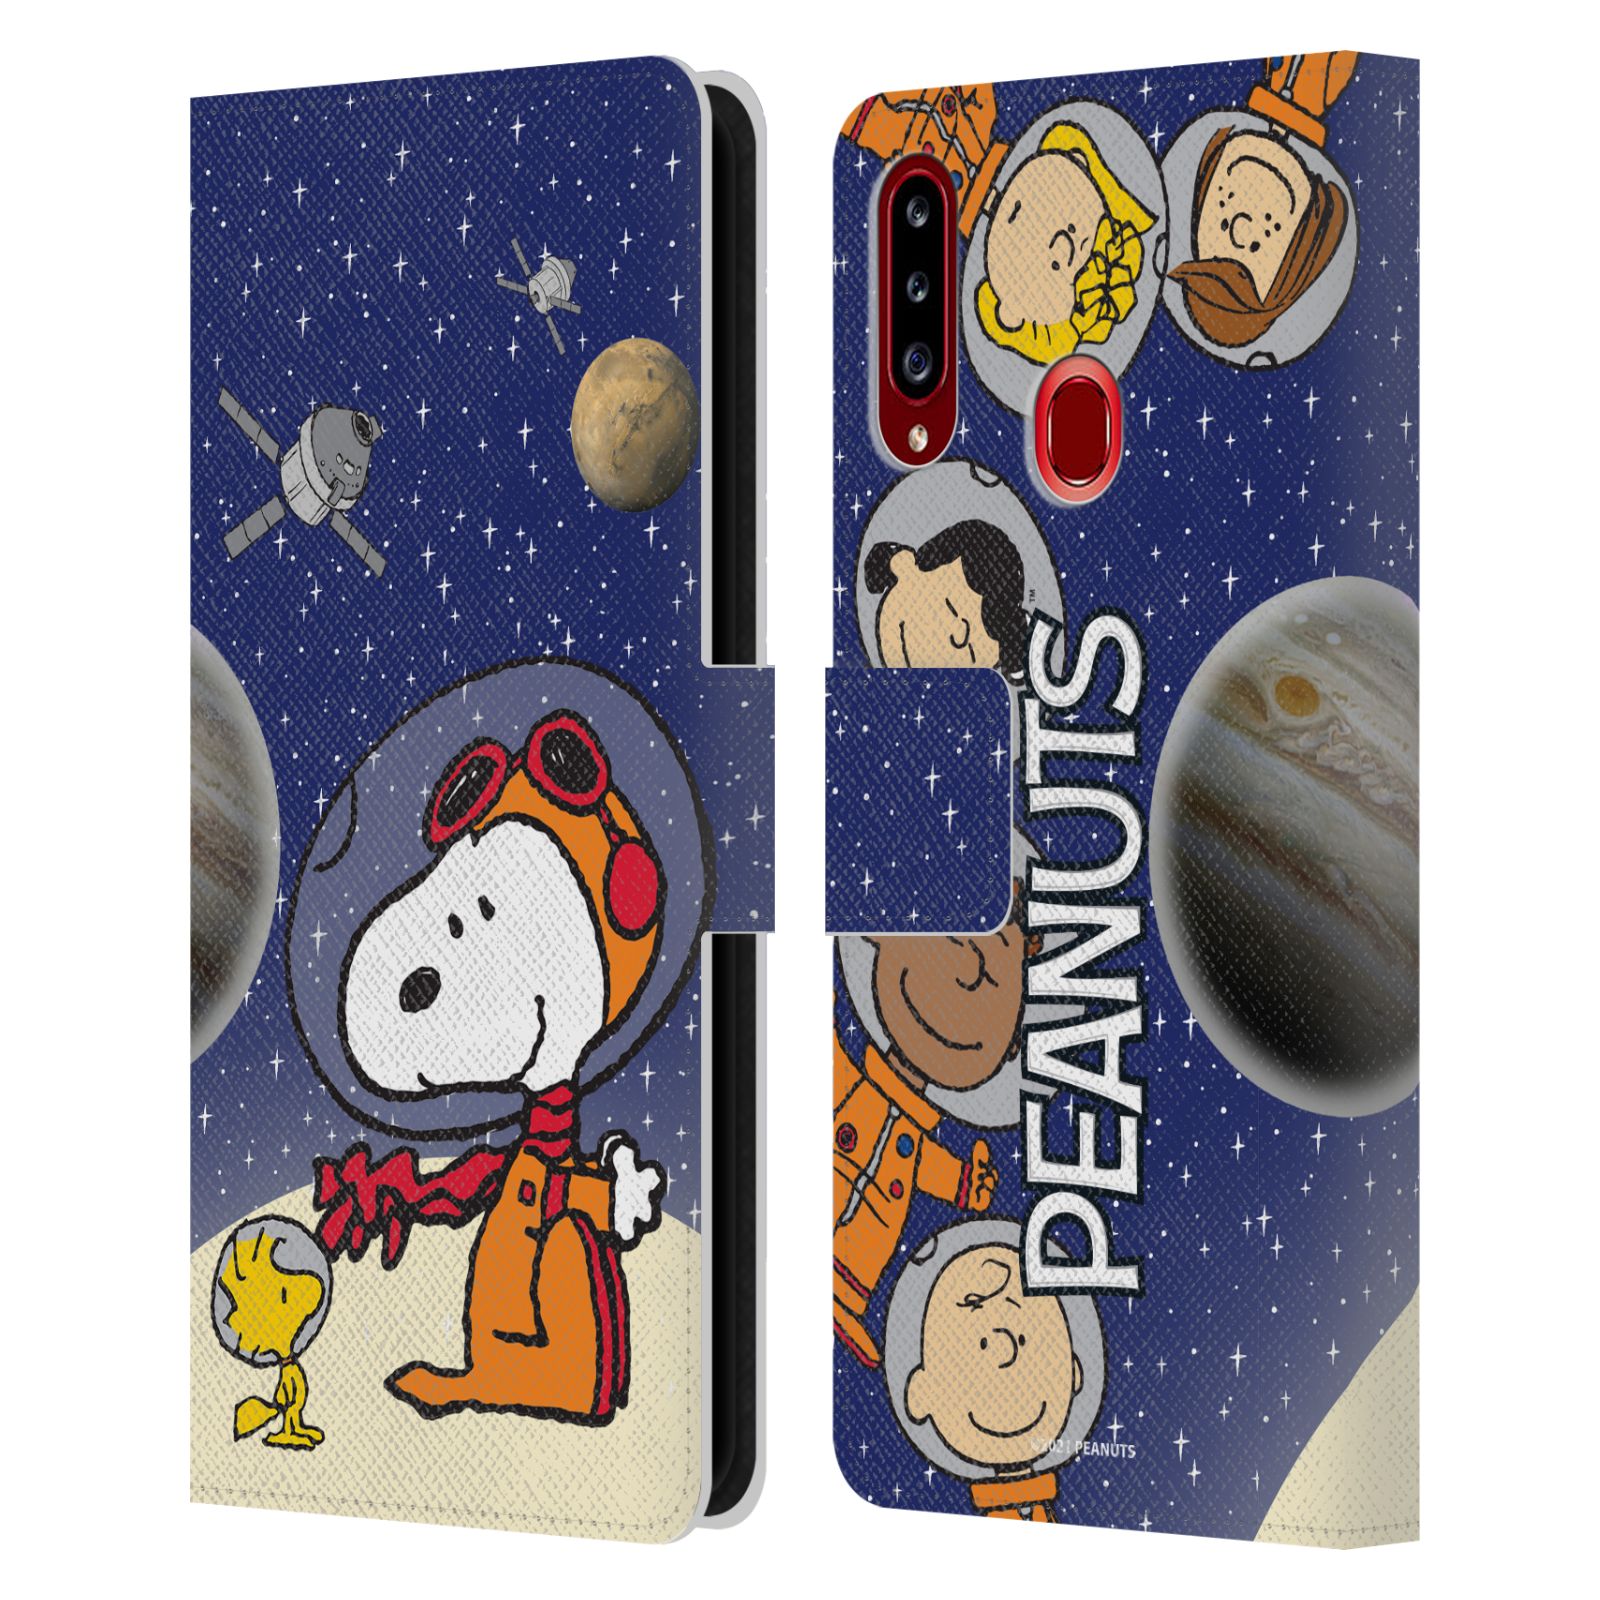 Pouzdro na mobil Samsung Galaxy A20S - HEAD CASE - Peanuts Snoopy ve vesmíru 2